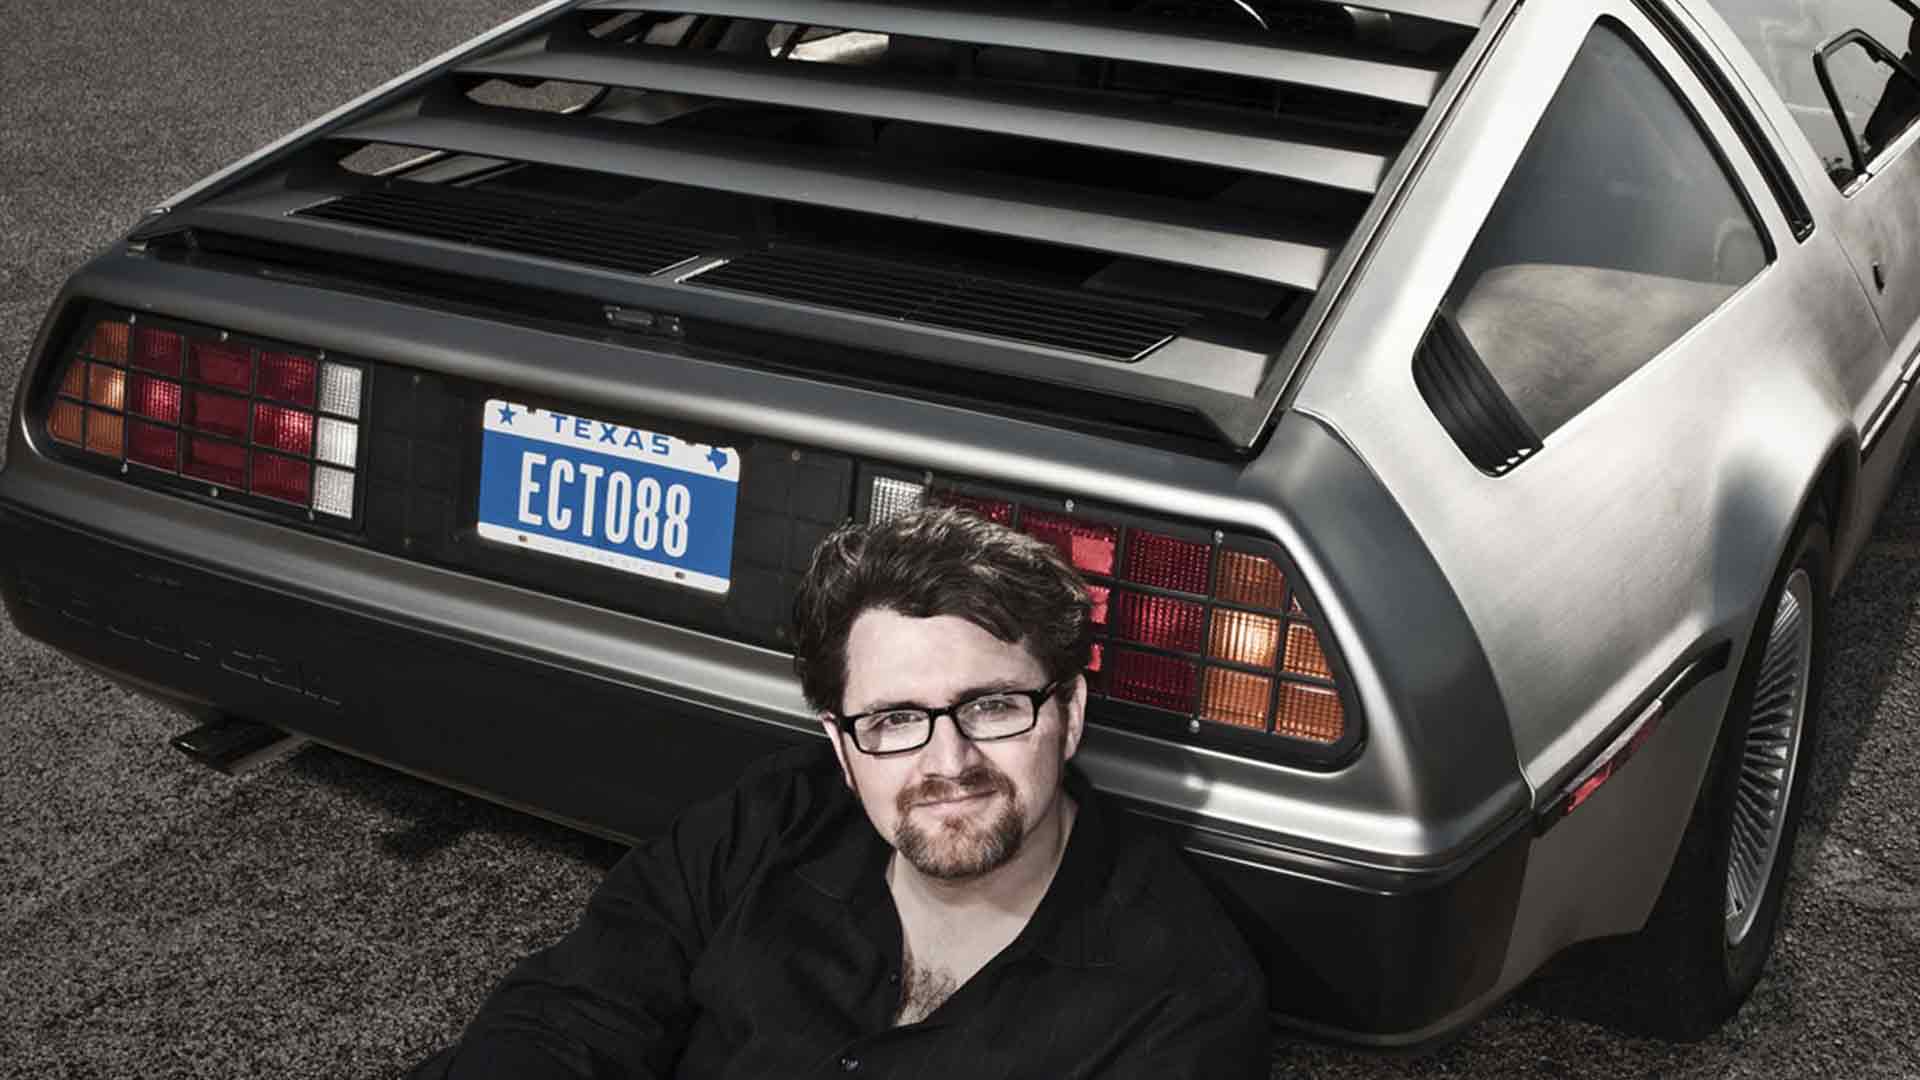 Ecto 88 | DeLoreanDirectory.com